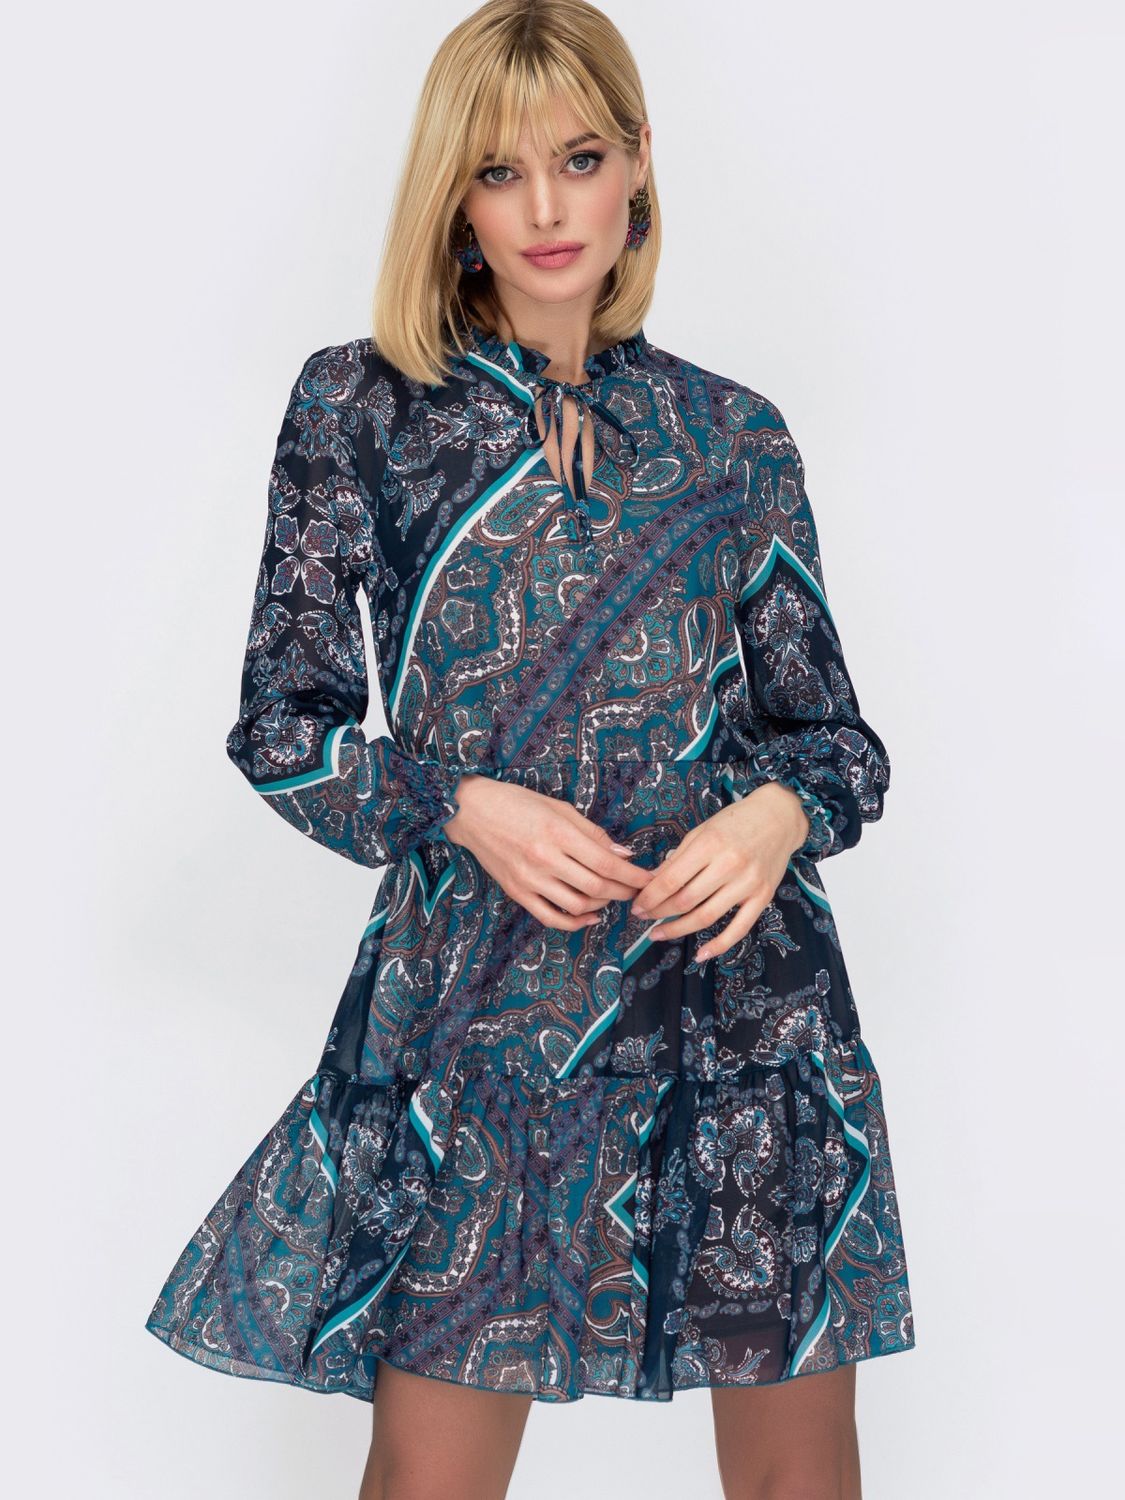 Шифоновое платье бирюзового цвета с широким воланом - фото